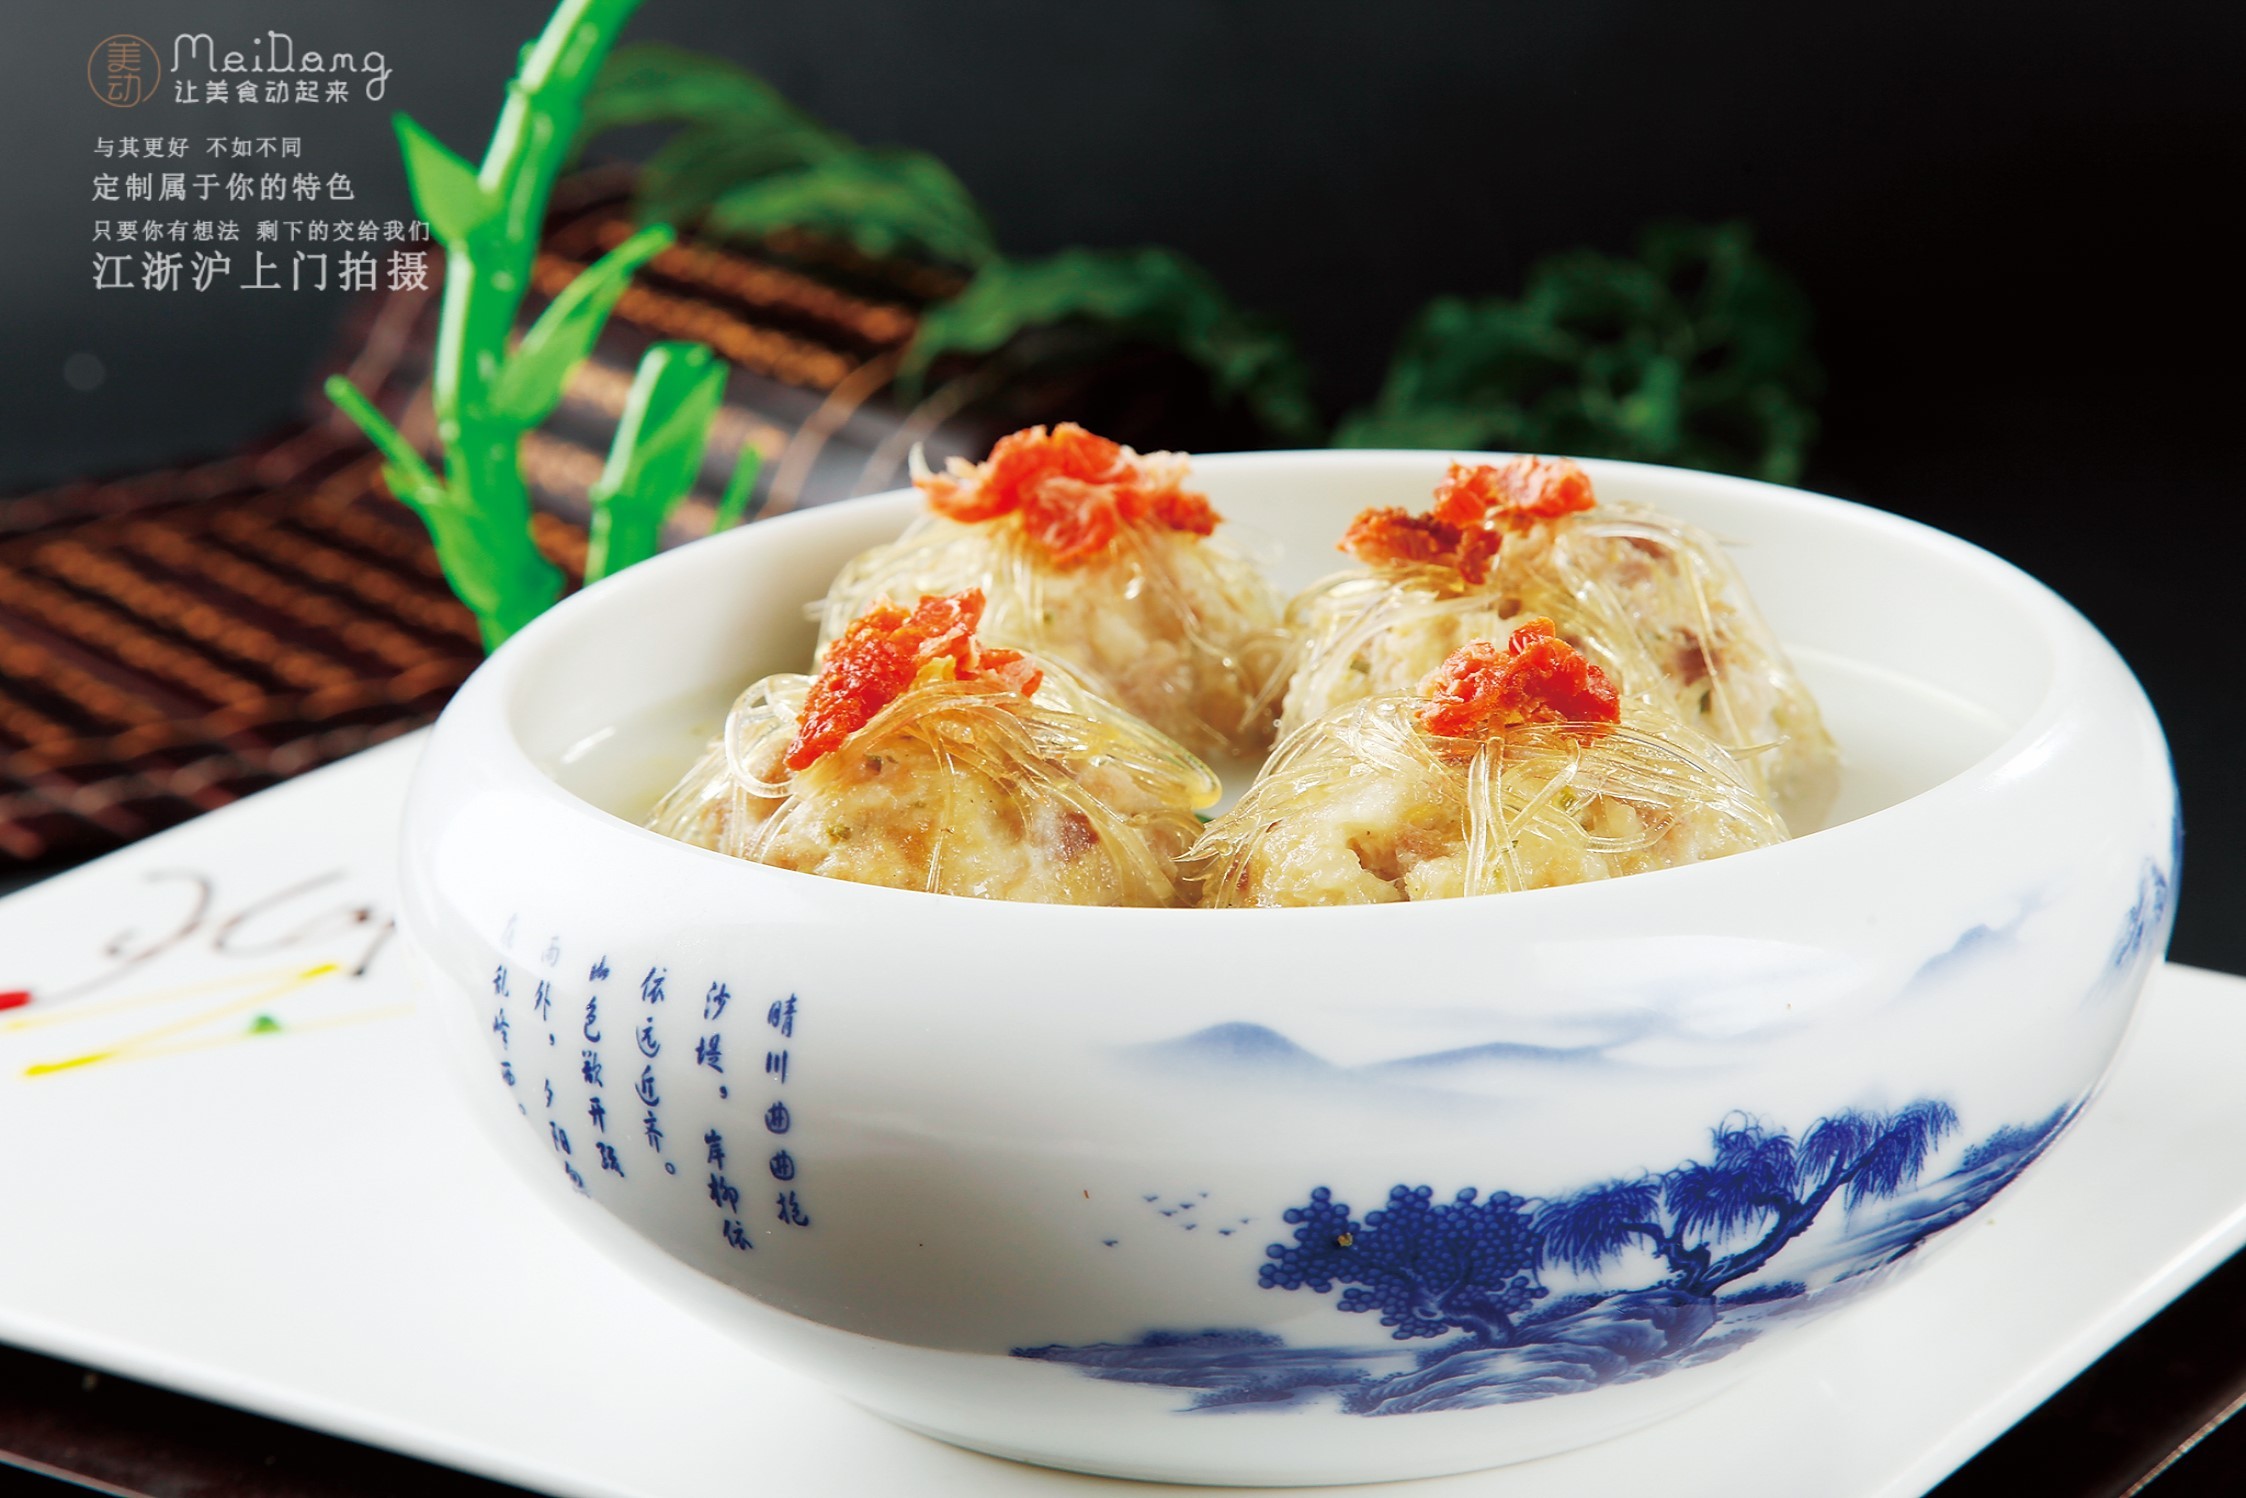 上海有什么好吃的江西菜？ - 知乎